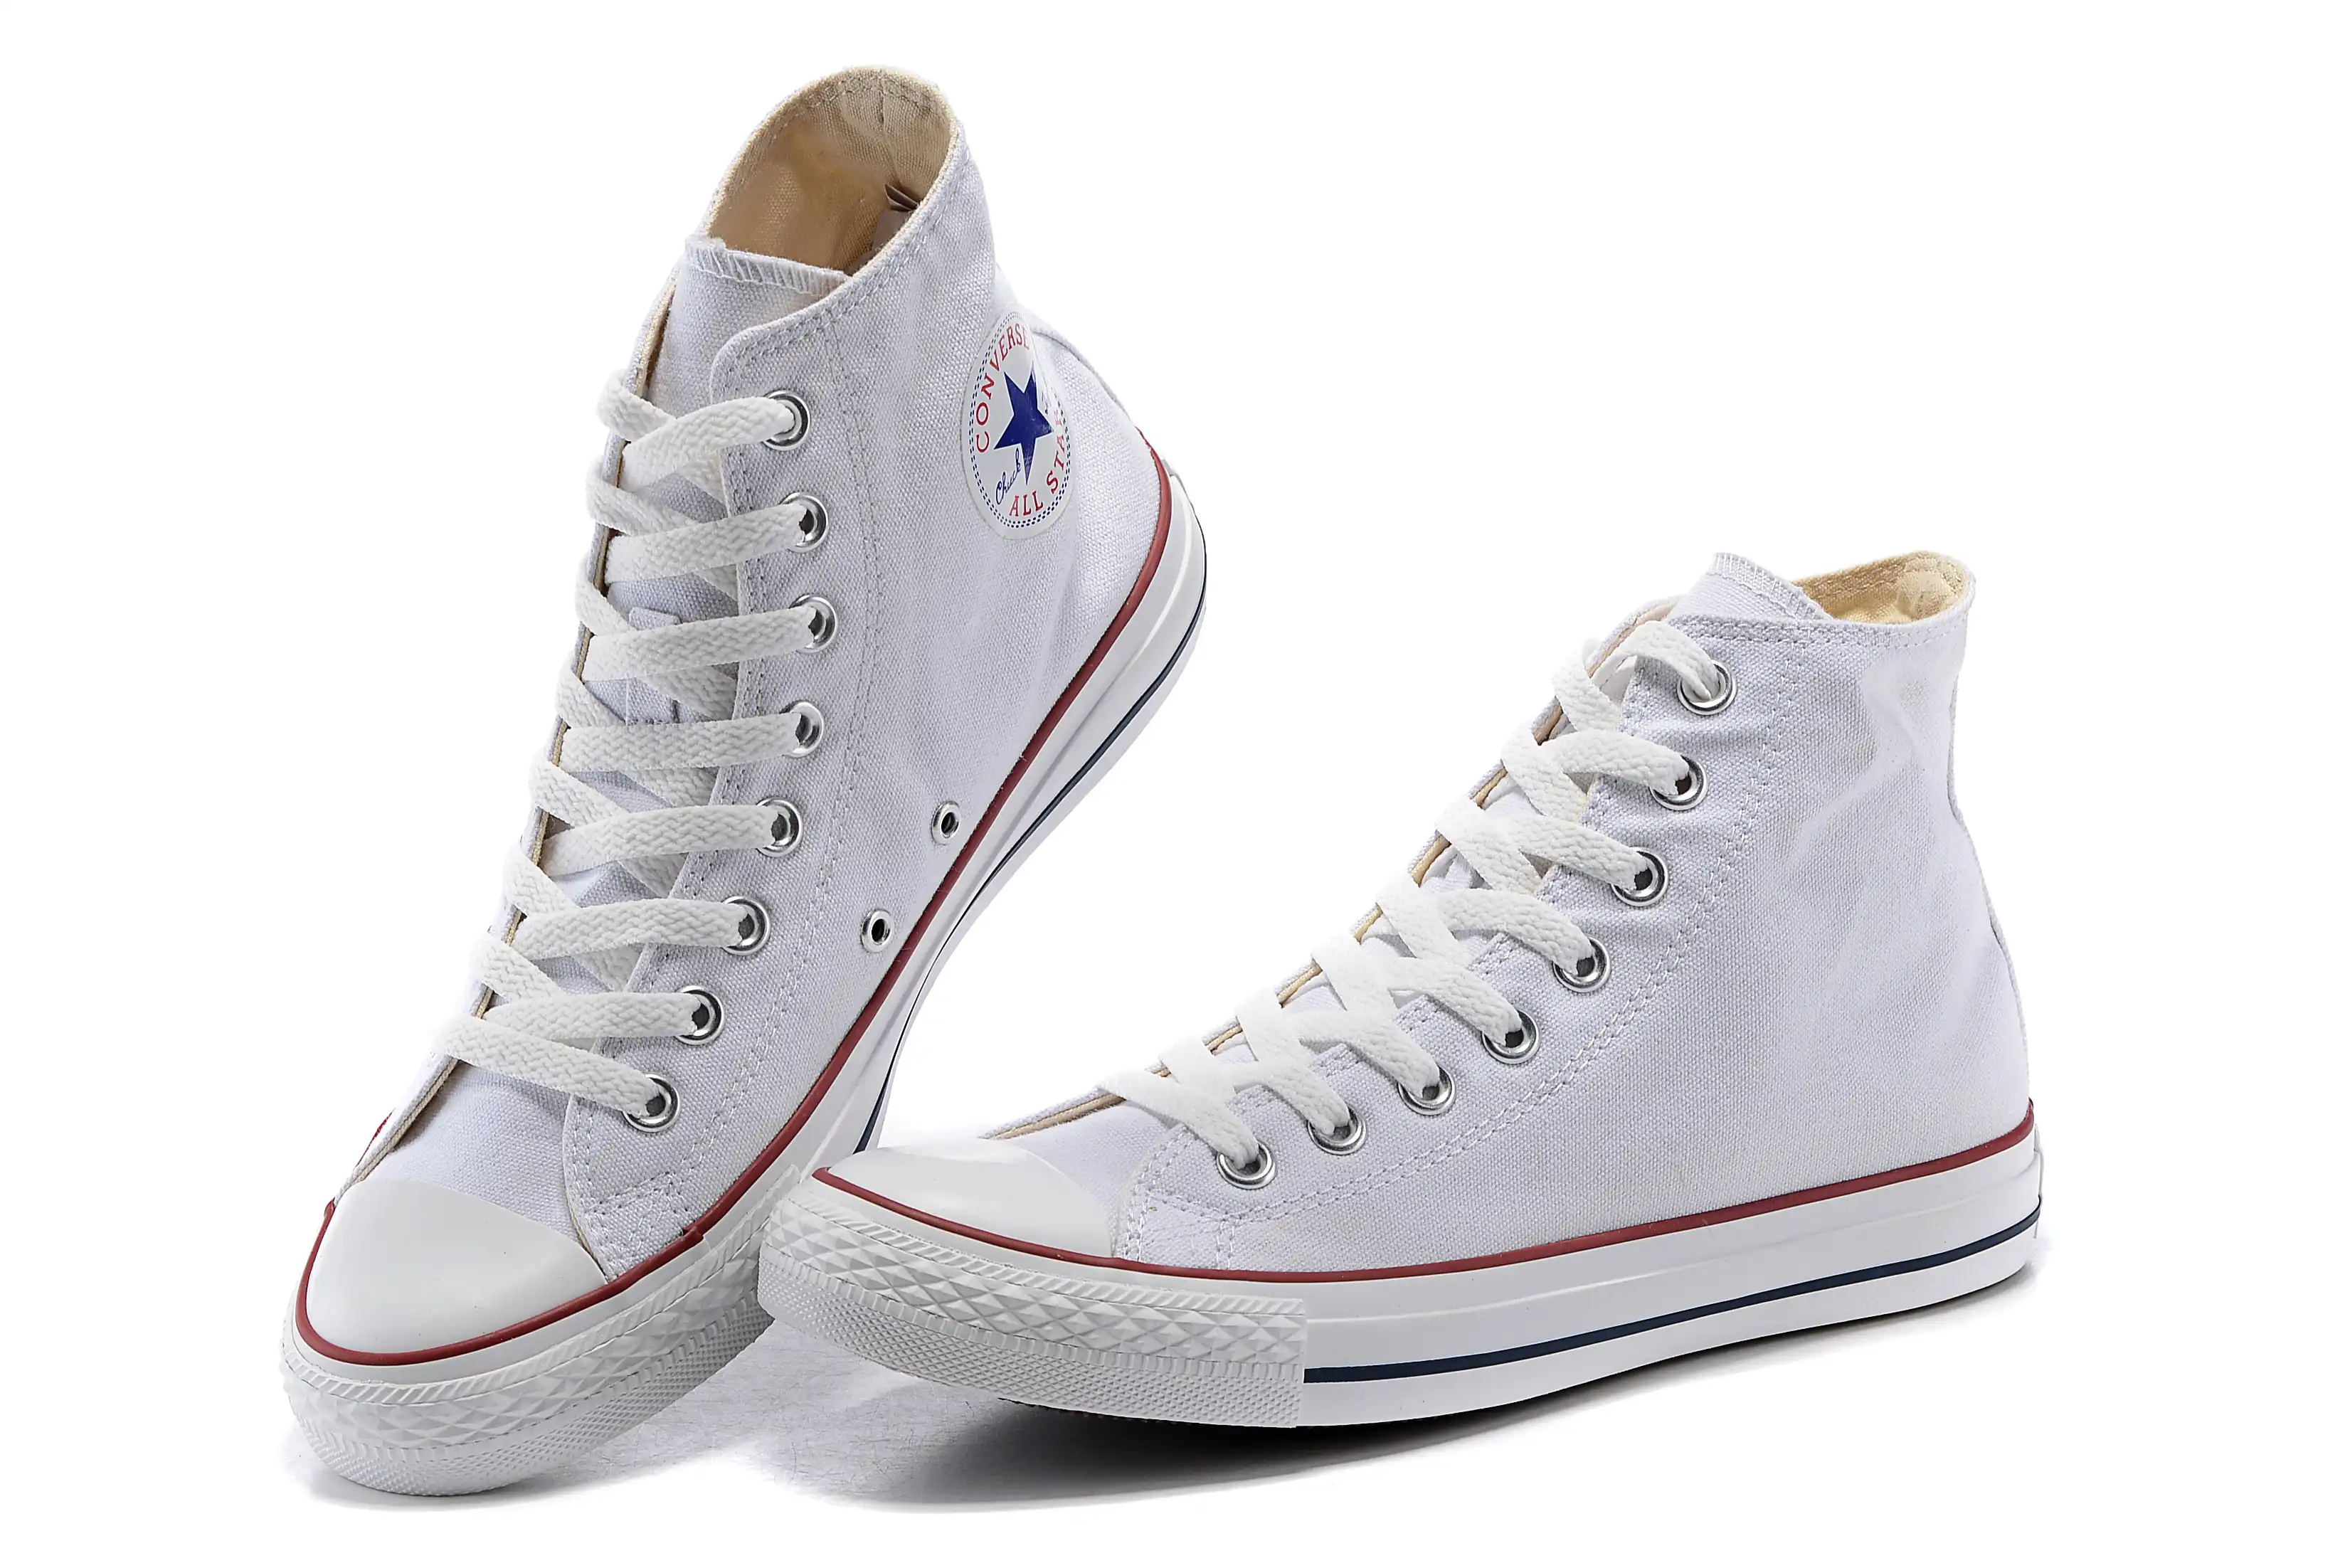 Converse classe all star skate sapatos homem das sapatilhas das mulheres de  lona alta baixa confortável durável unisex calçado|Skate| - AliExpress